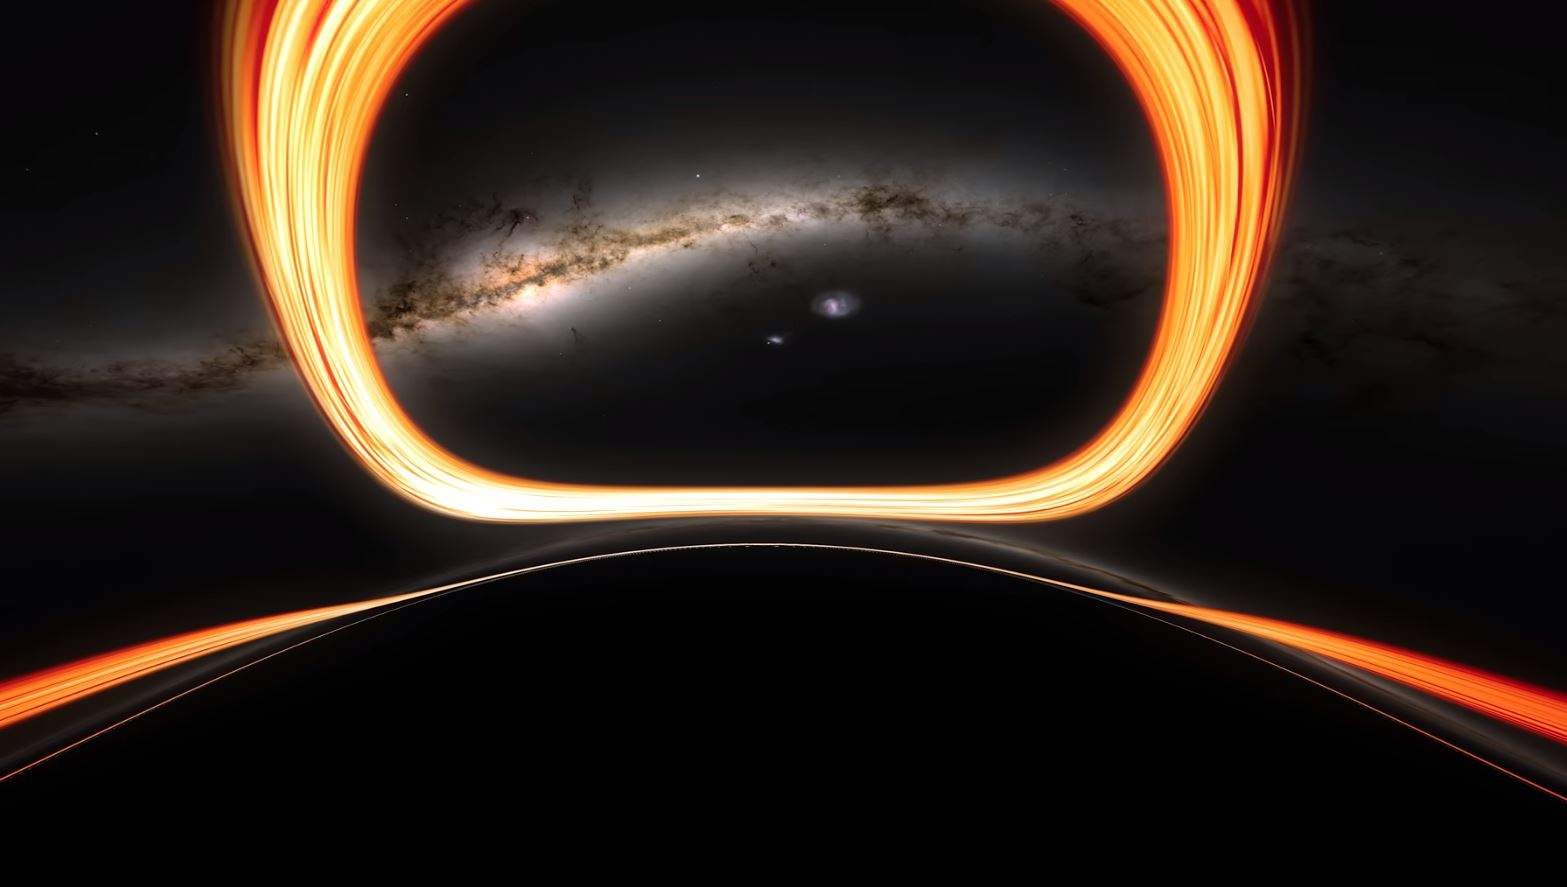 ¿Cómo sería caer en un agujero negro? La NASA te da pistas